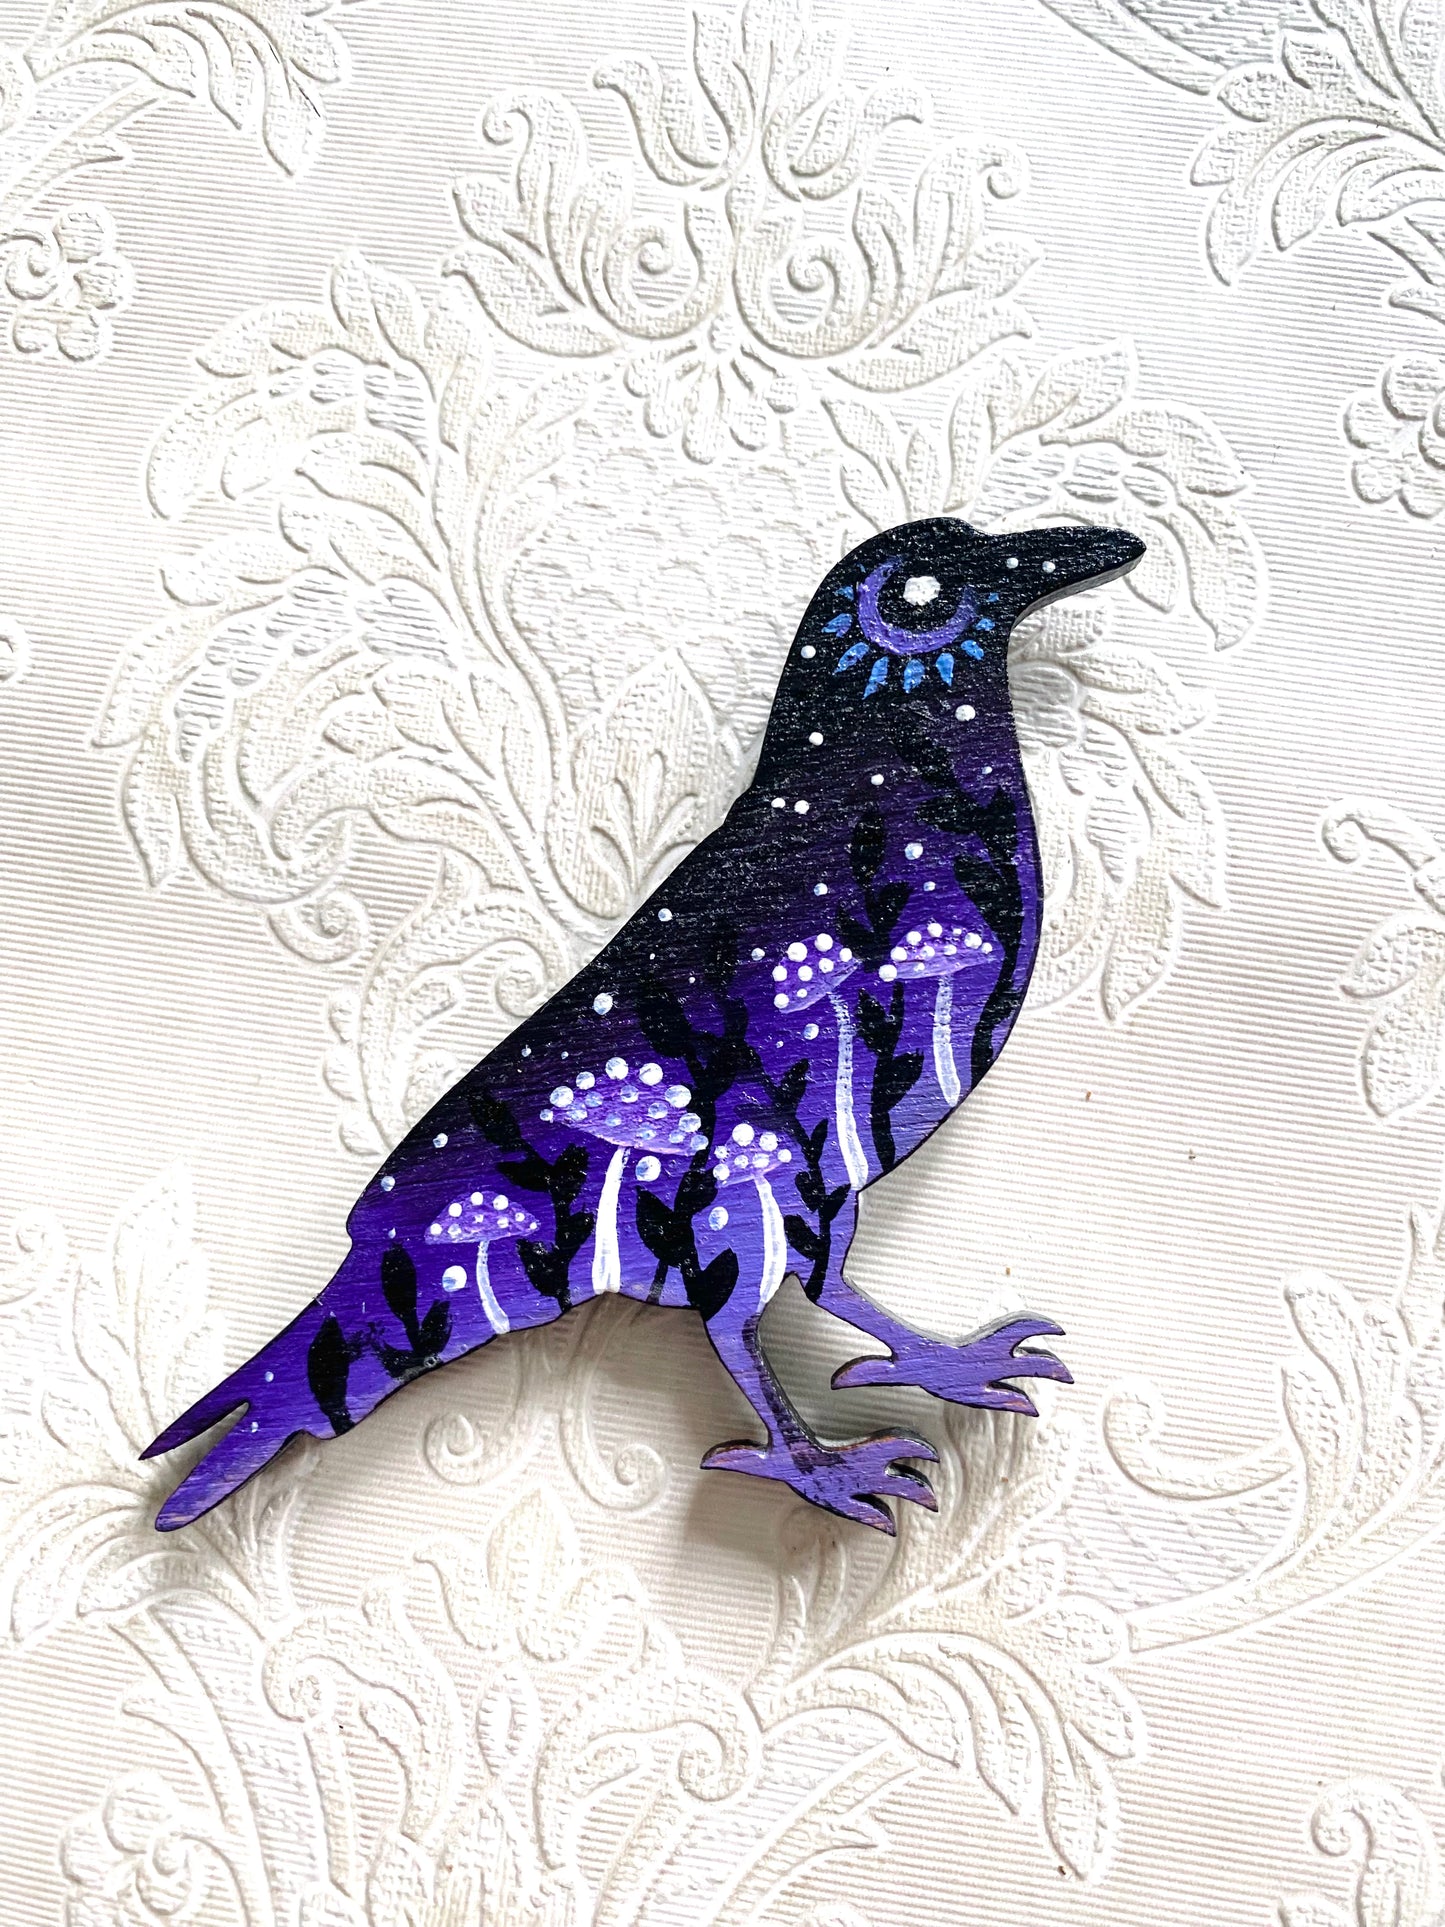 Hand-painted crow magnet / Kézzel festett varjú mágnes